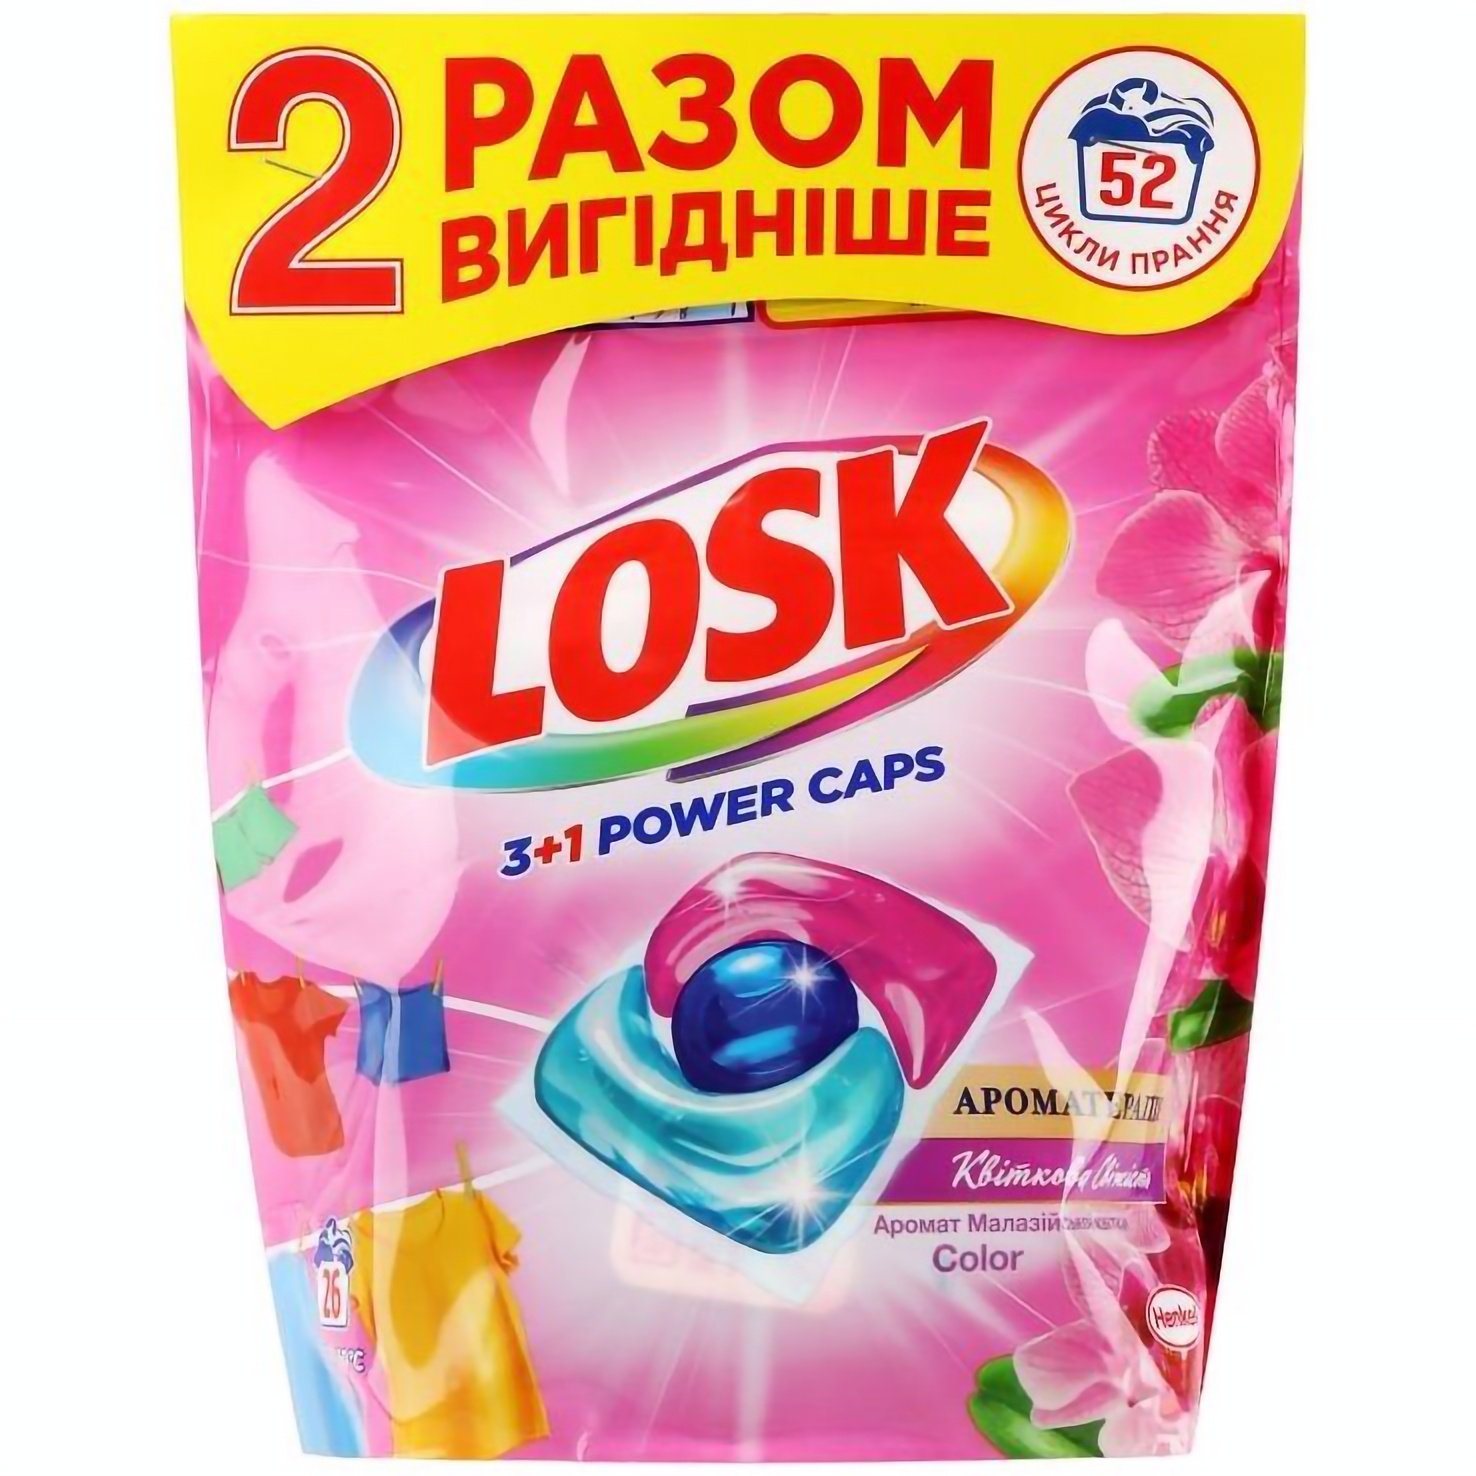 Набір капсул для прання Losk тріо-капсули Ароматерапія Ефірні масла та аромат Малазійська квітка 52 шт. (2 уп. х 26 шт.) - фото 1